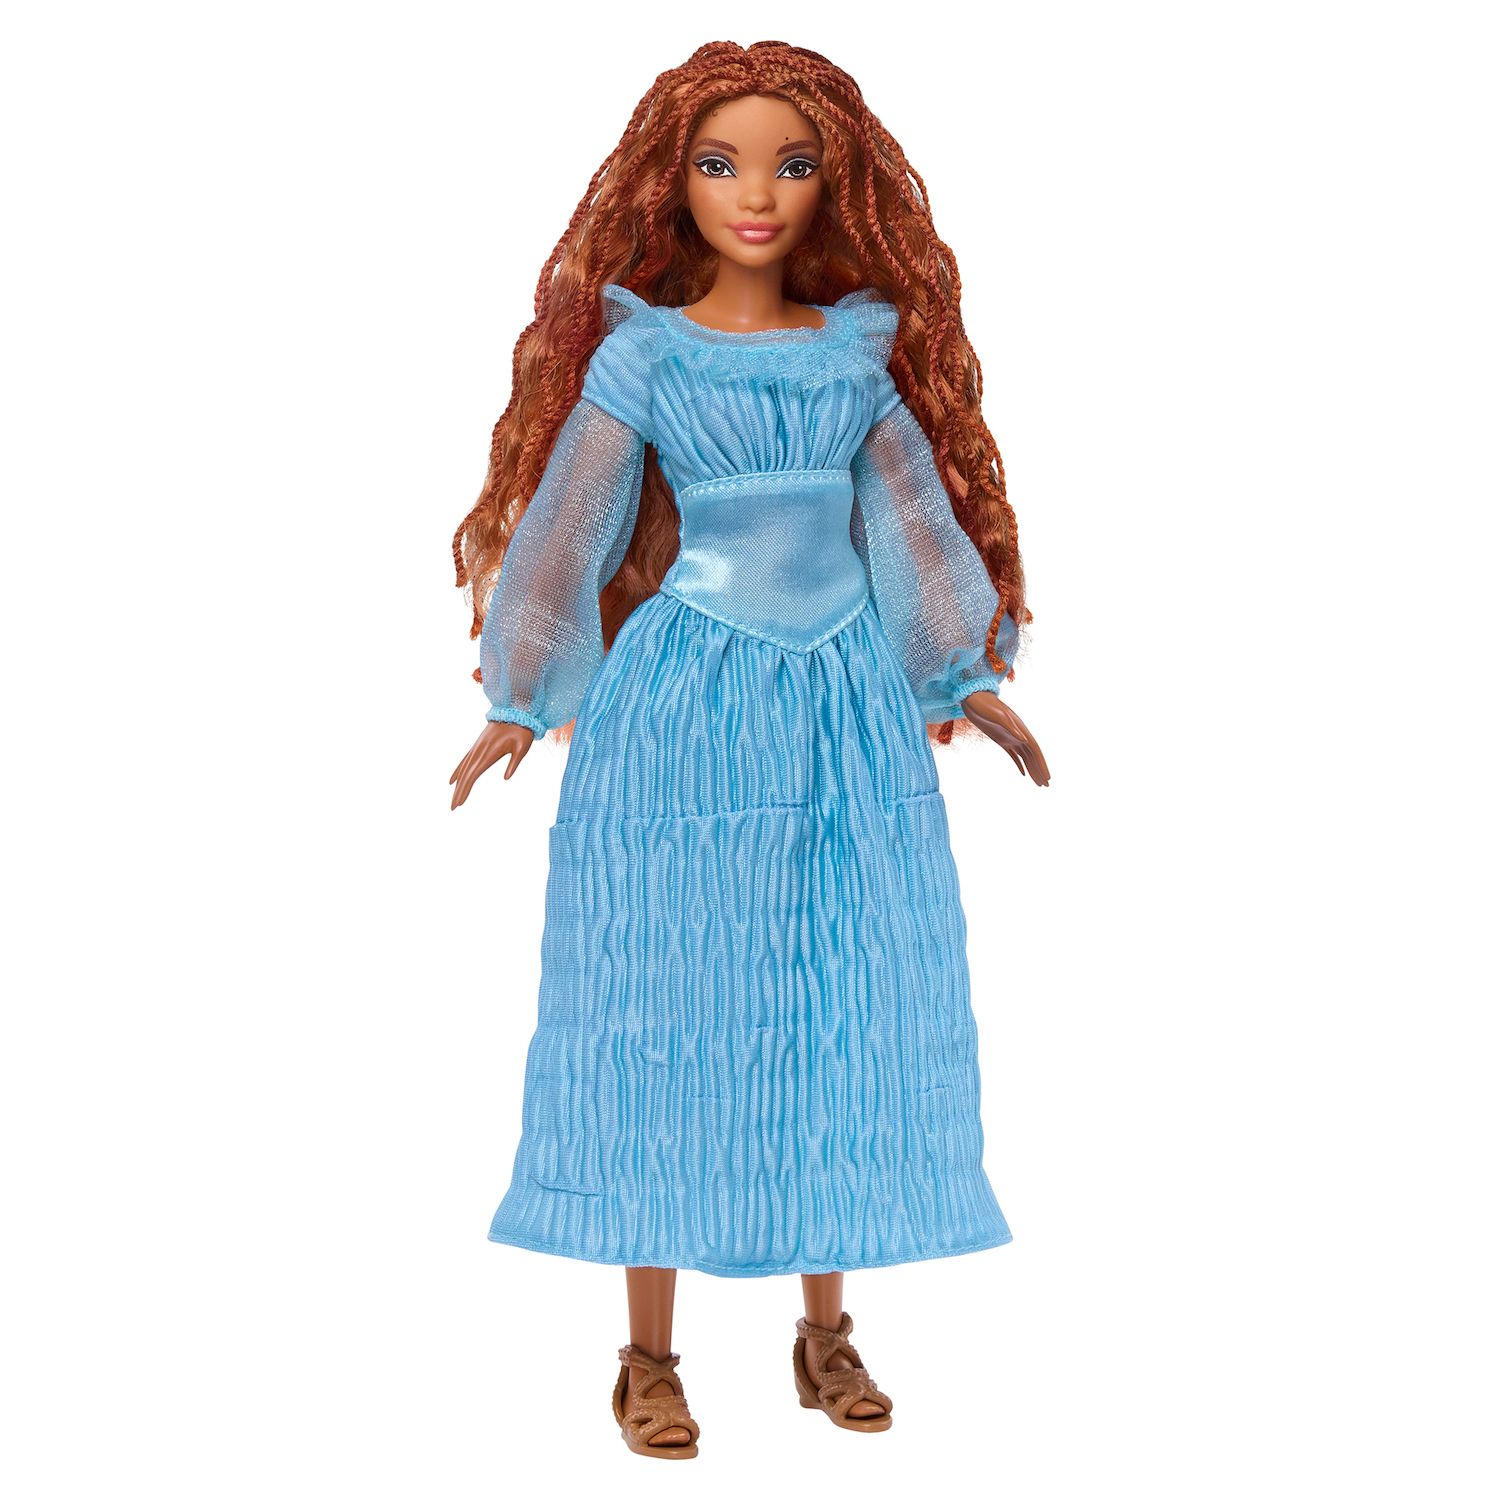 Модная кукла Диснея «Русалочка Ариэль на суше» от Mattel Mattel кукла принцессы диснея золушка mattel